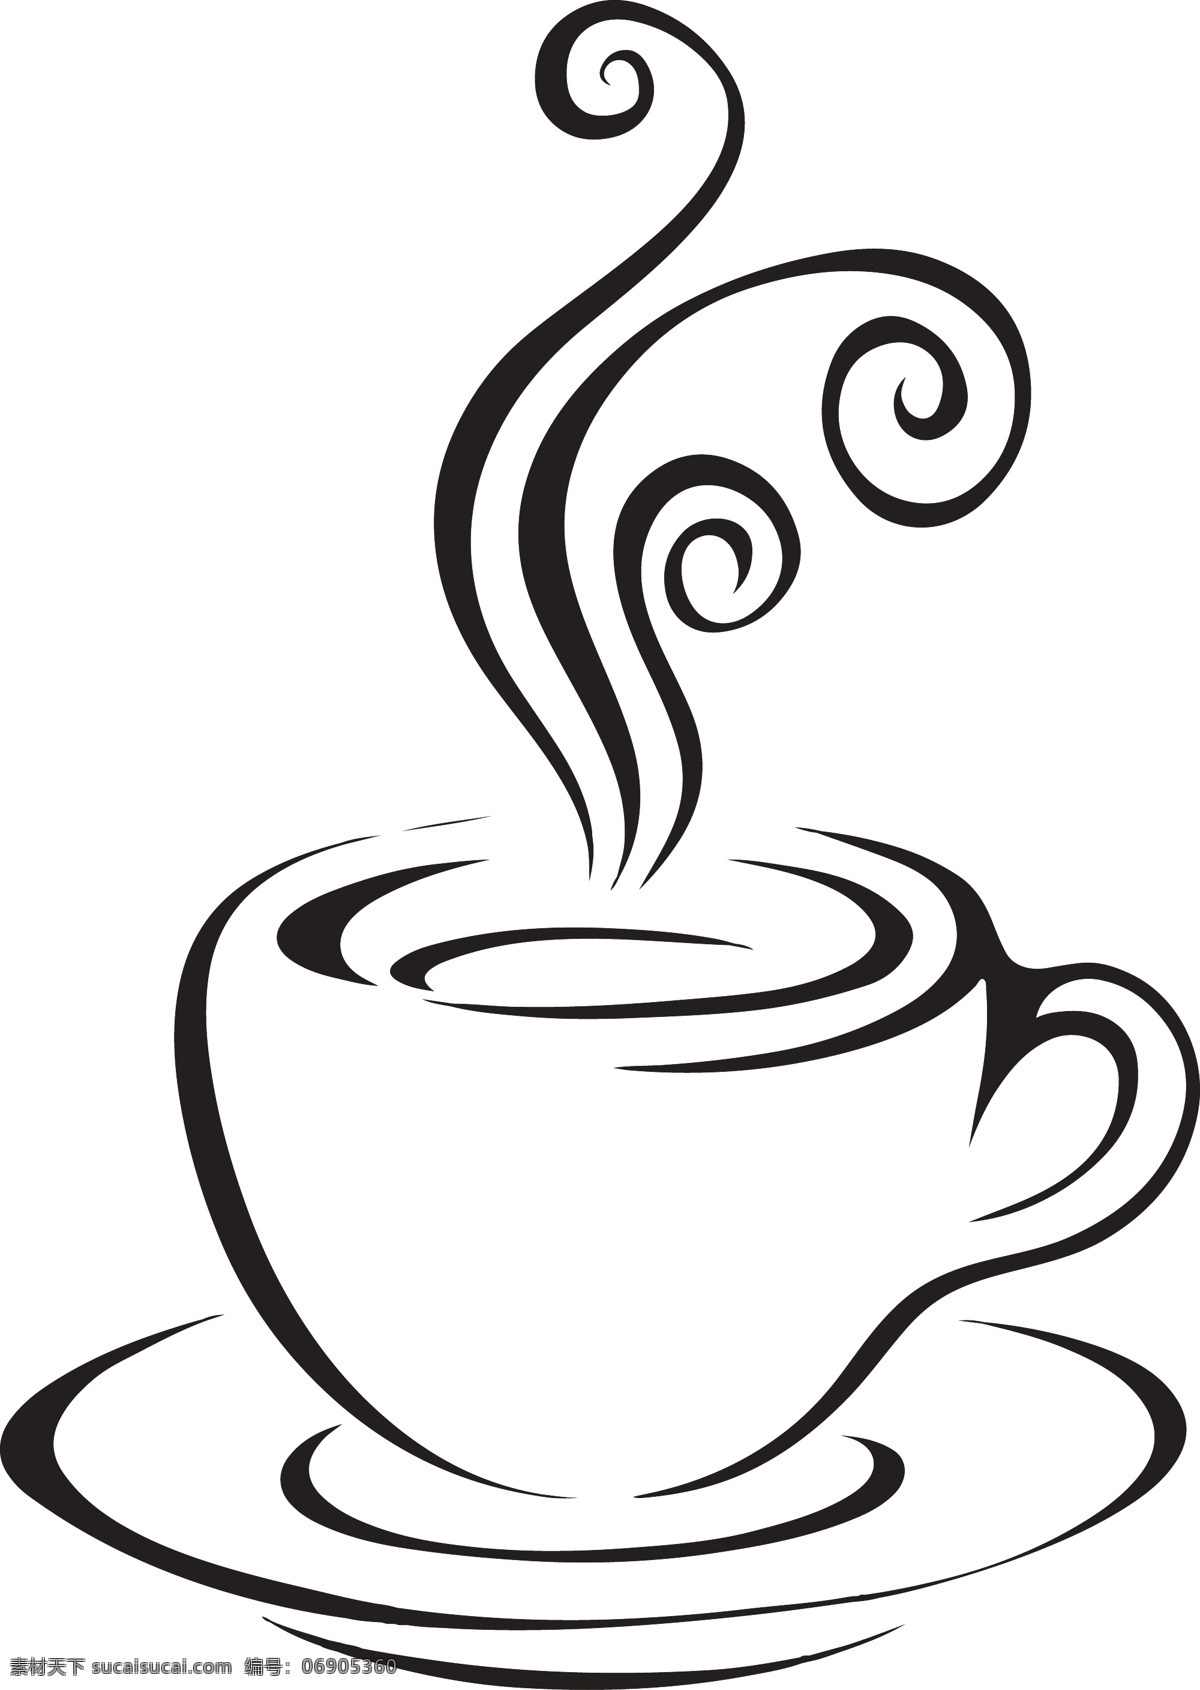 咖啡杯 茶杯 矢量 矢量图 矢量素材 矢量元素 矢量装饰 设计元素 设计素材 矢量茶杯 矢量咖啡杯 给你说 杯子剪影 杯子轮廓图 装饰 标志图标 其他图标